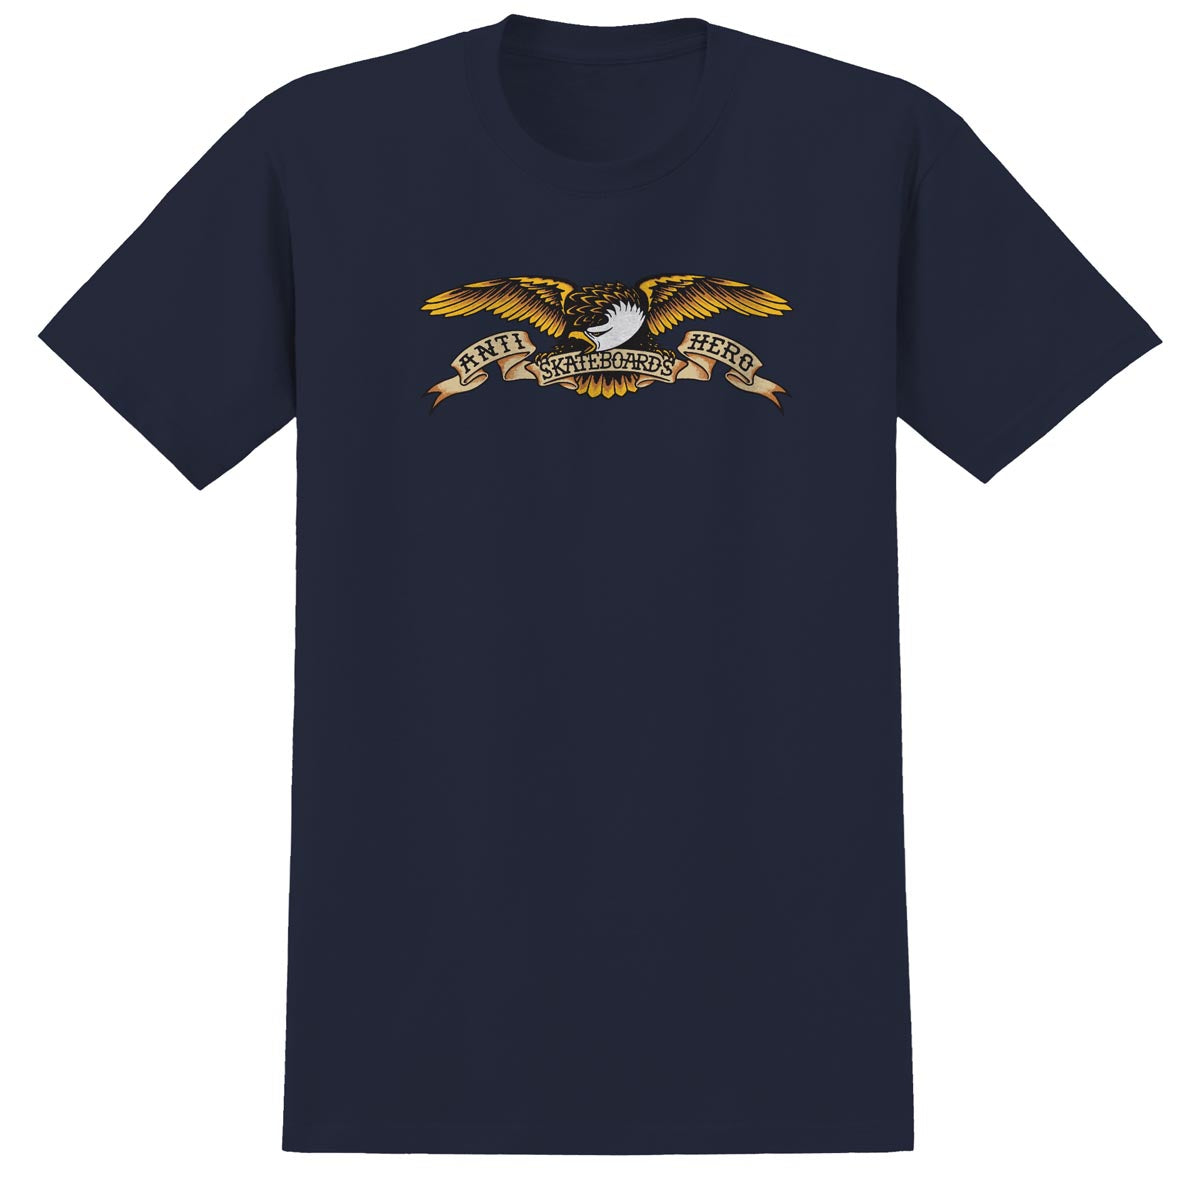 Anti-Hero Eagle T-Shirt - Navy/Black Multi Color image 1